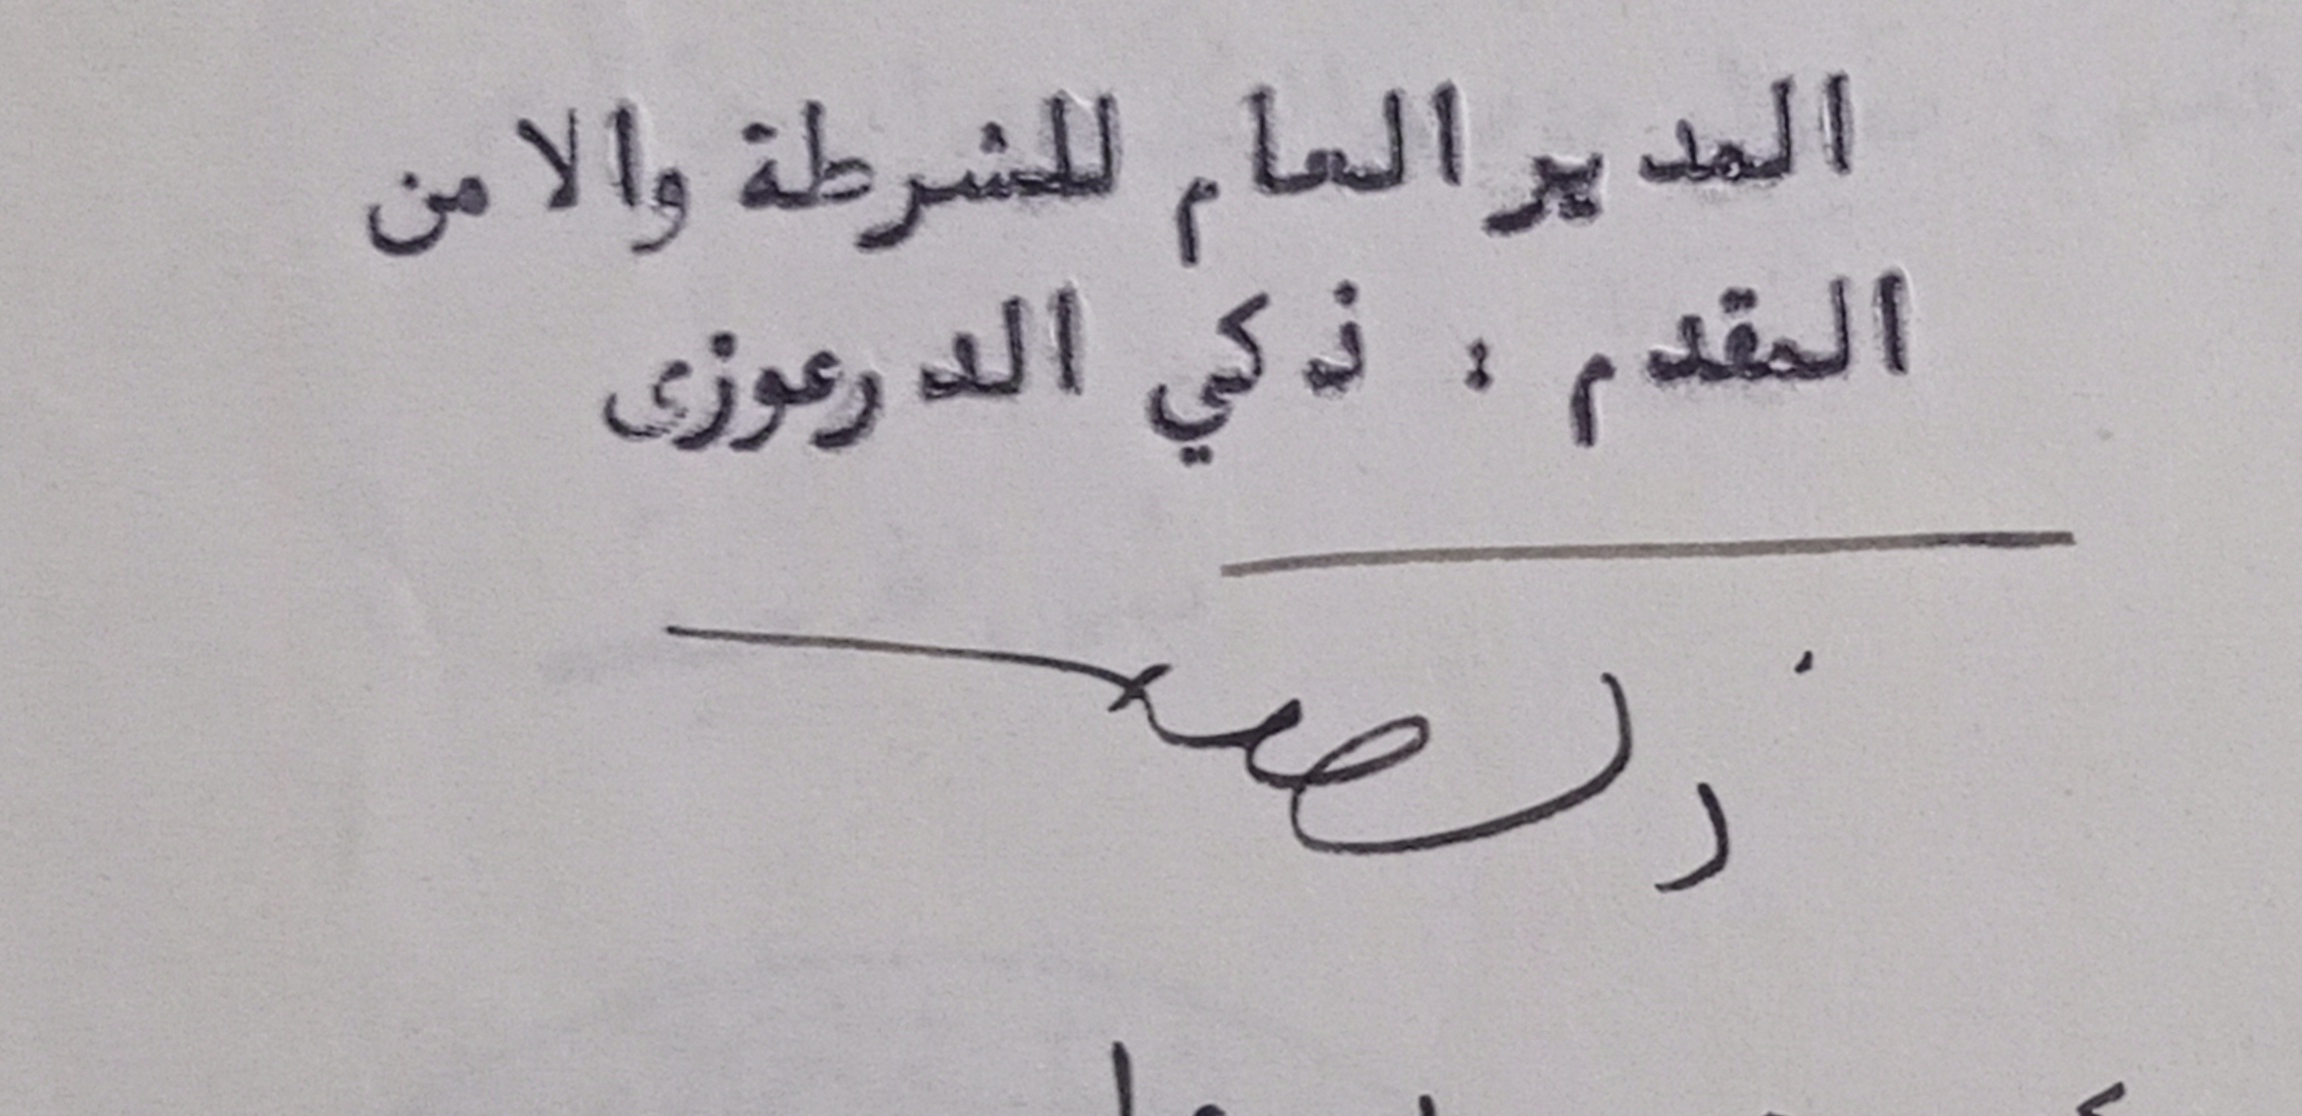 التاريخ السوري المعاصر - توقيع المقدم ذكي الدرعوزي المدير العام للشرطة والأمن عام 1956